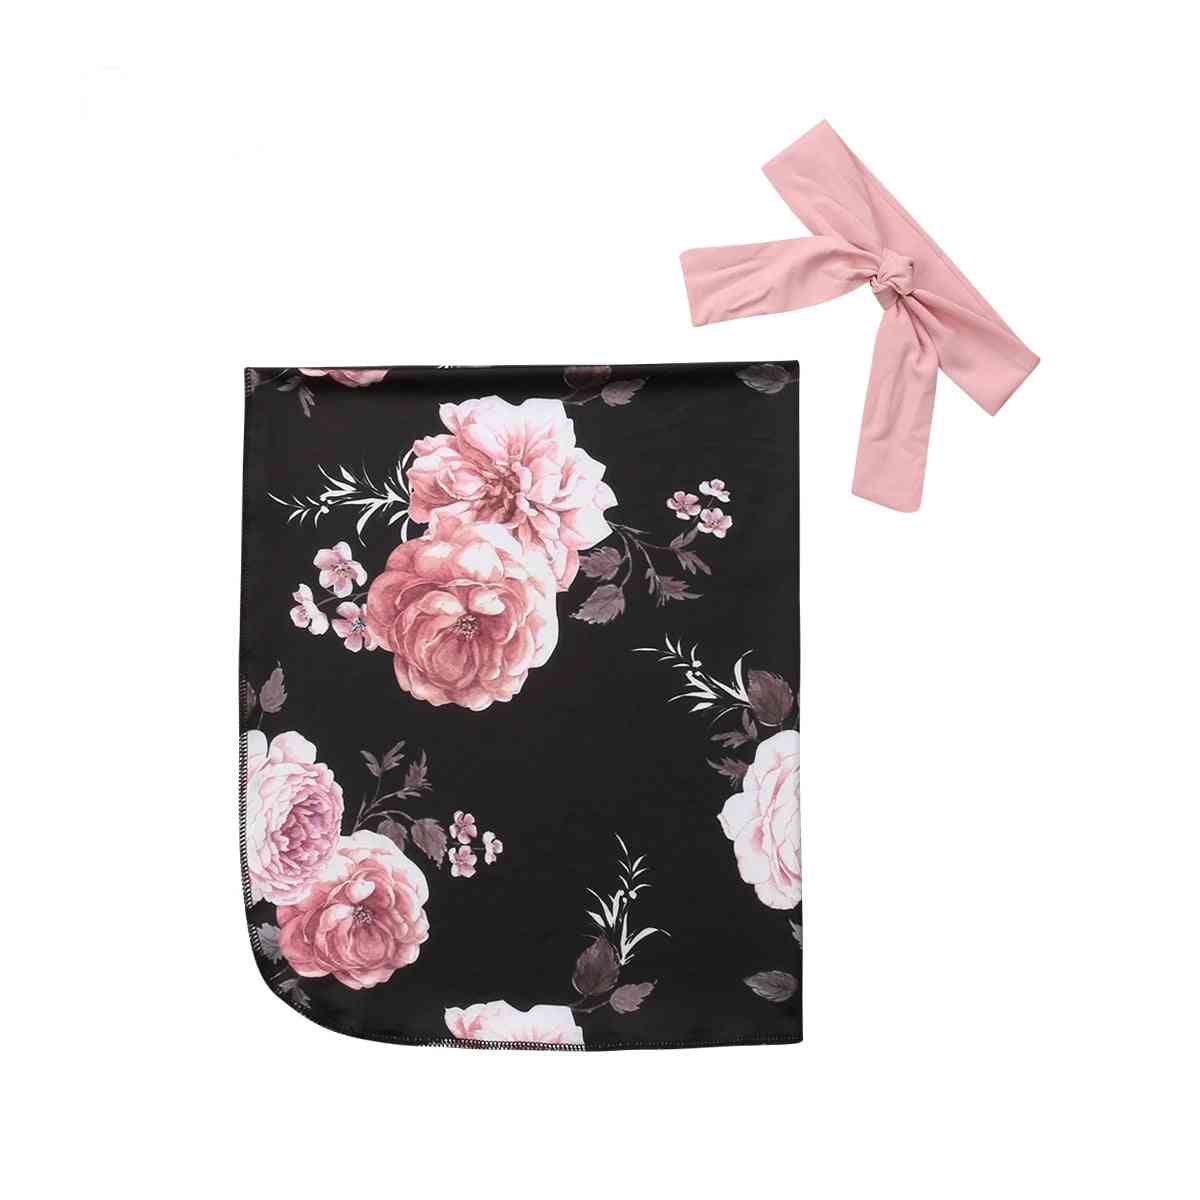 Nouveau-né bébé filles coton imprimé floral couverture emmailloter mousseline wrap sac de couchage emmaillotage + couvre-chef (marine) -